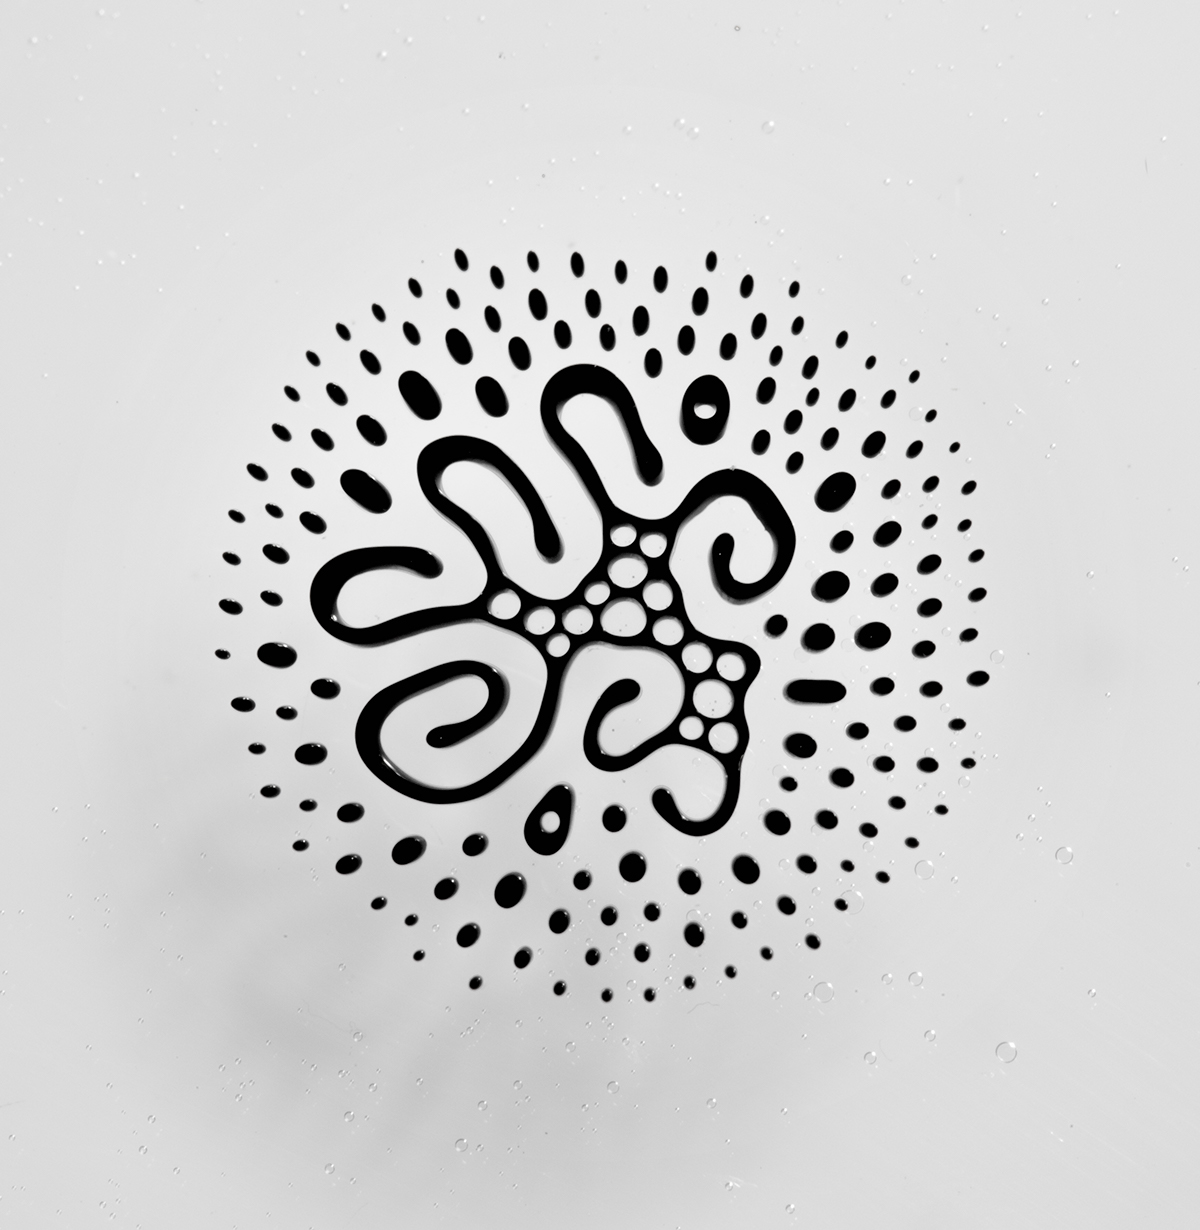 Typeface ferrofluid scientific science art prints monochrome letterpress modern